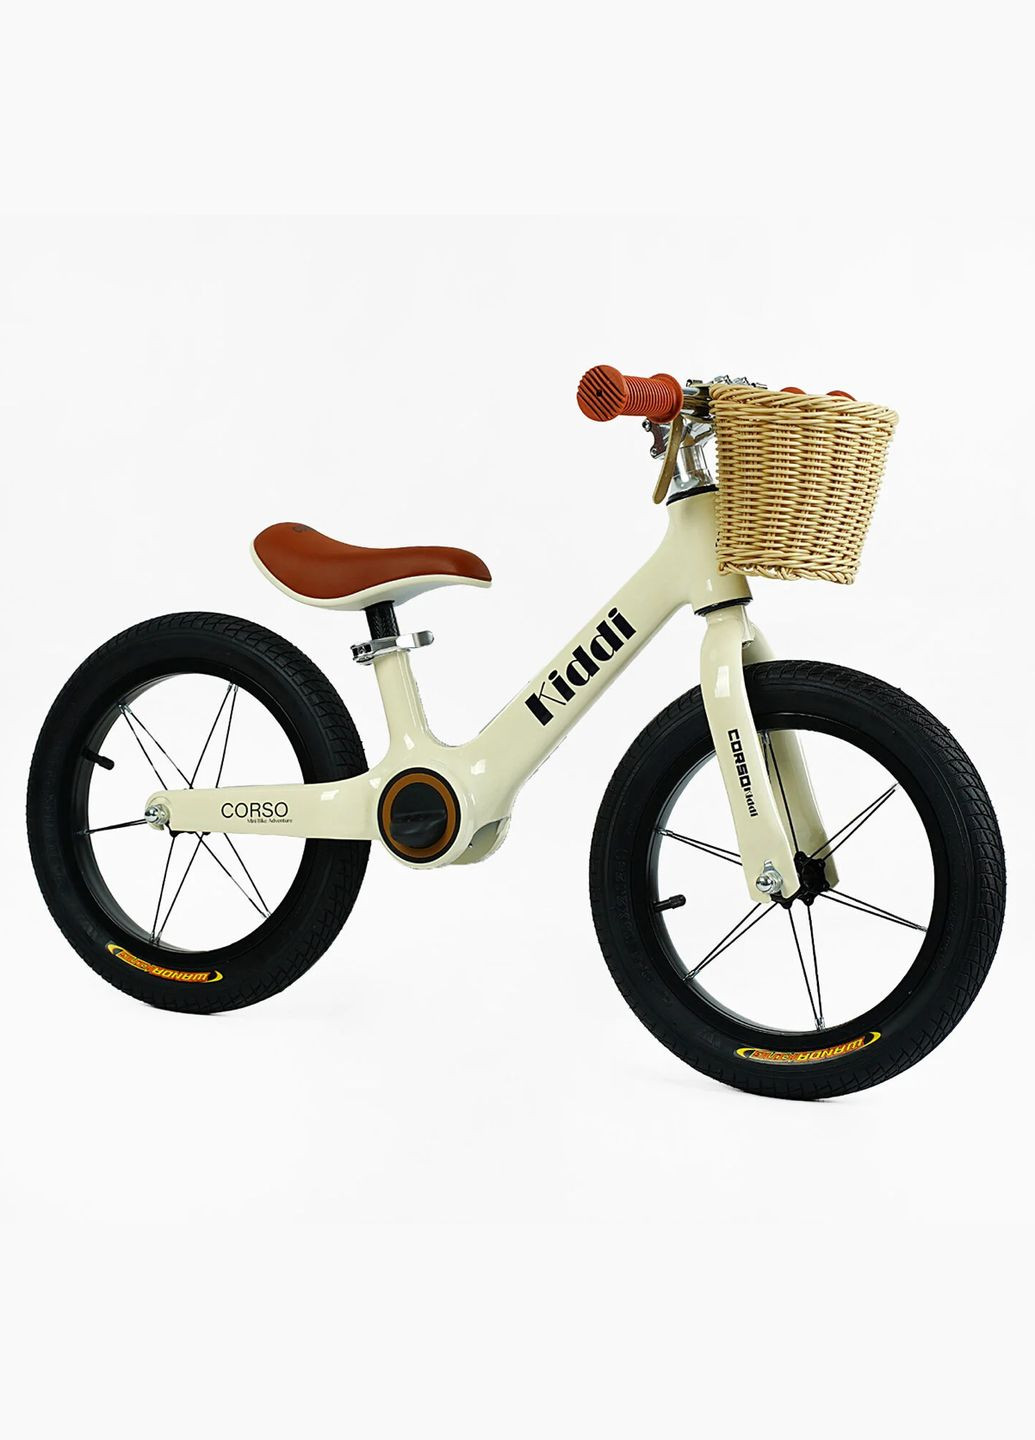 Дитячий велобіг KIDDI LT-14104. Магнієва рама, надувні колеса 14", підставка для ніг, кошик Corso (290668421)